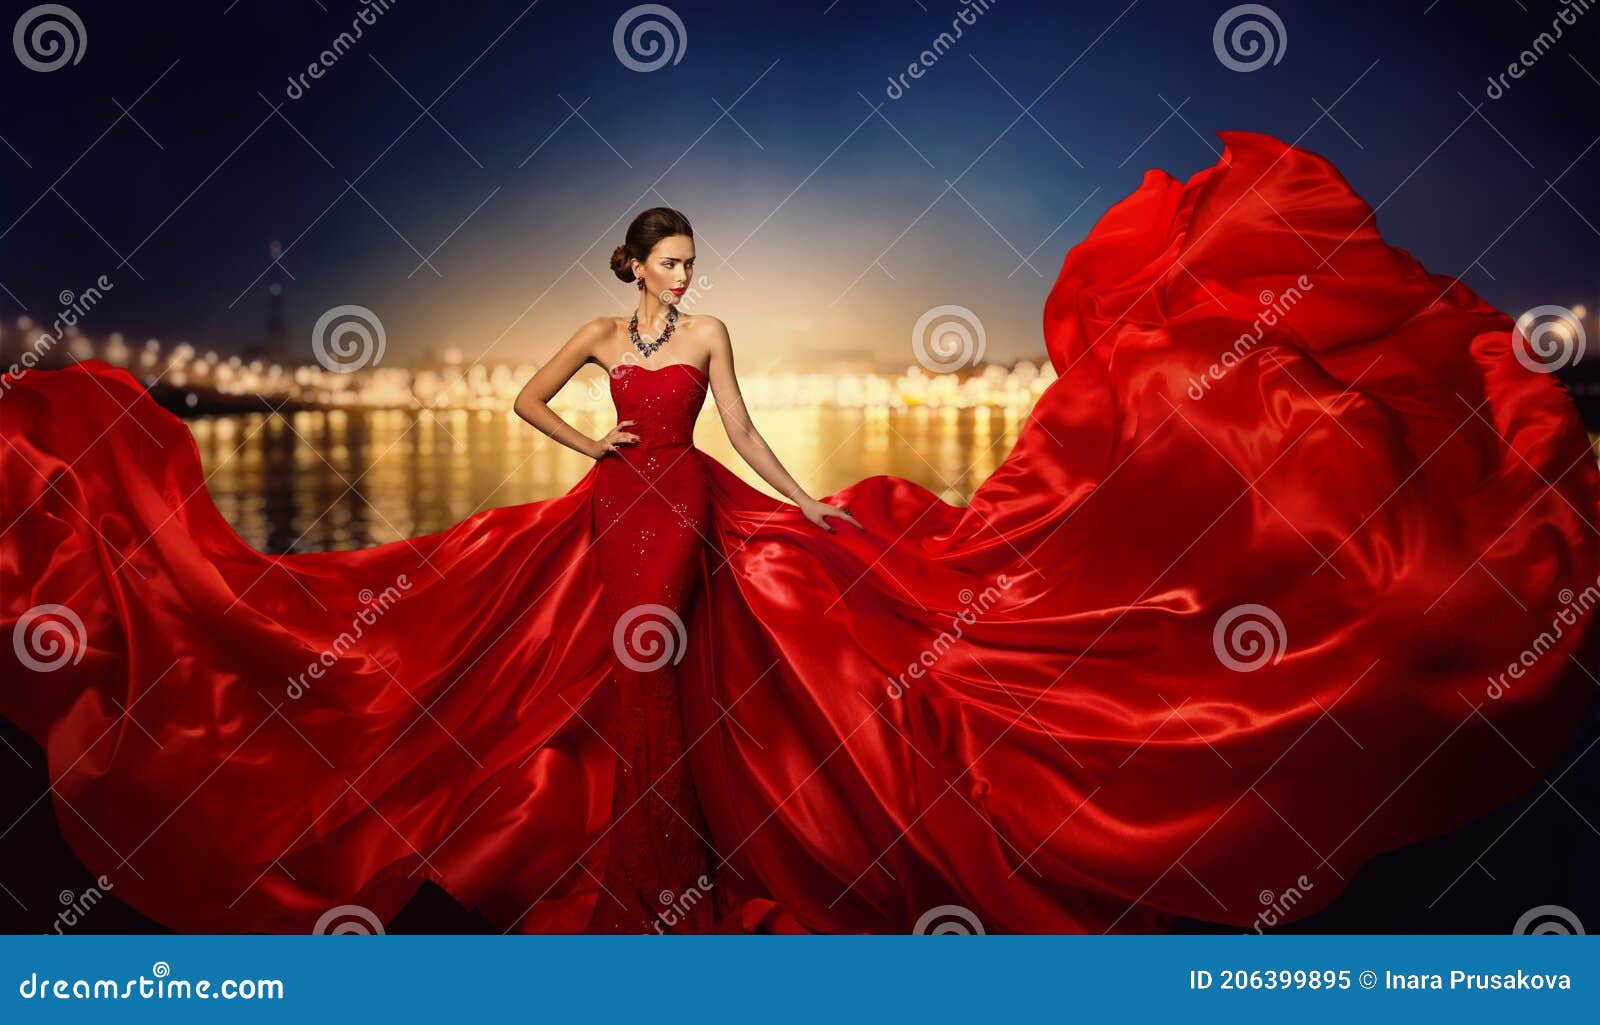 fashion model in fluttering dress in night city street lights, elegant woman in red long gown beauty portrait